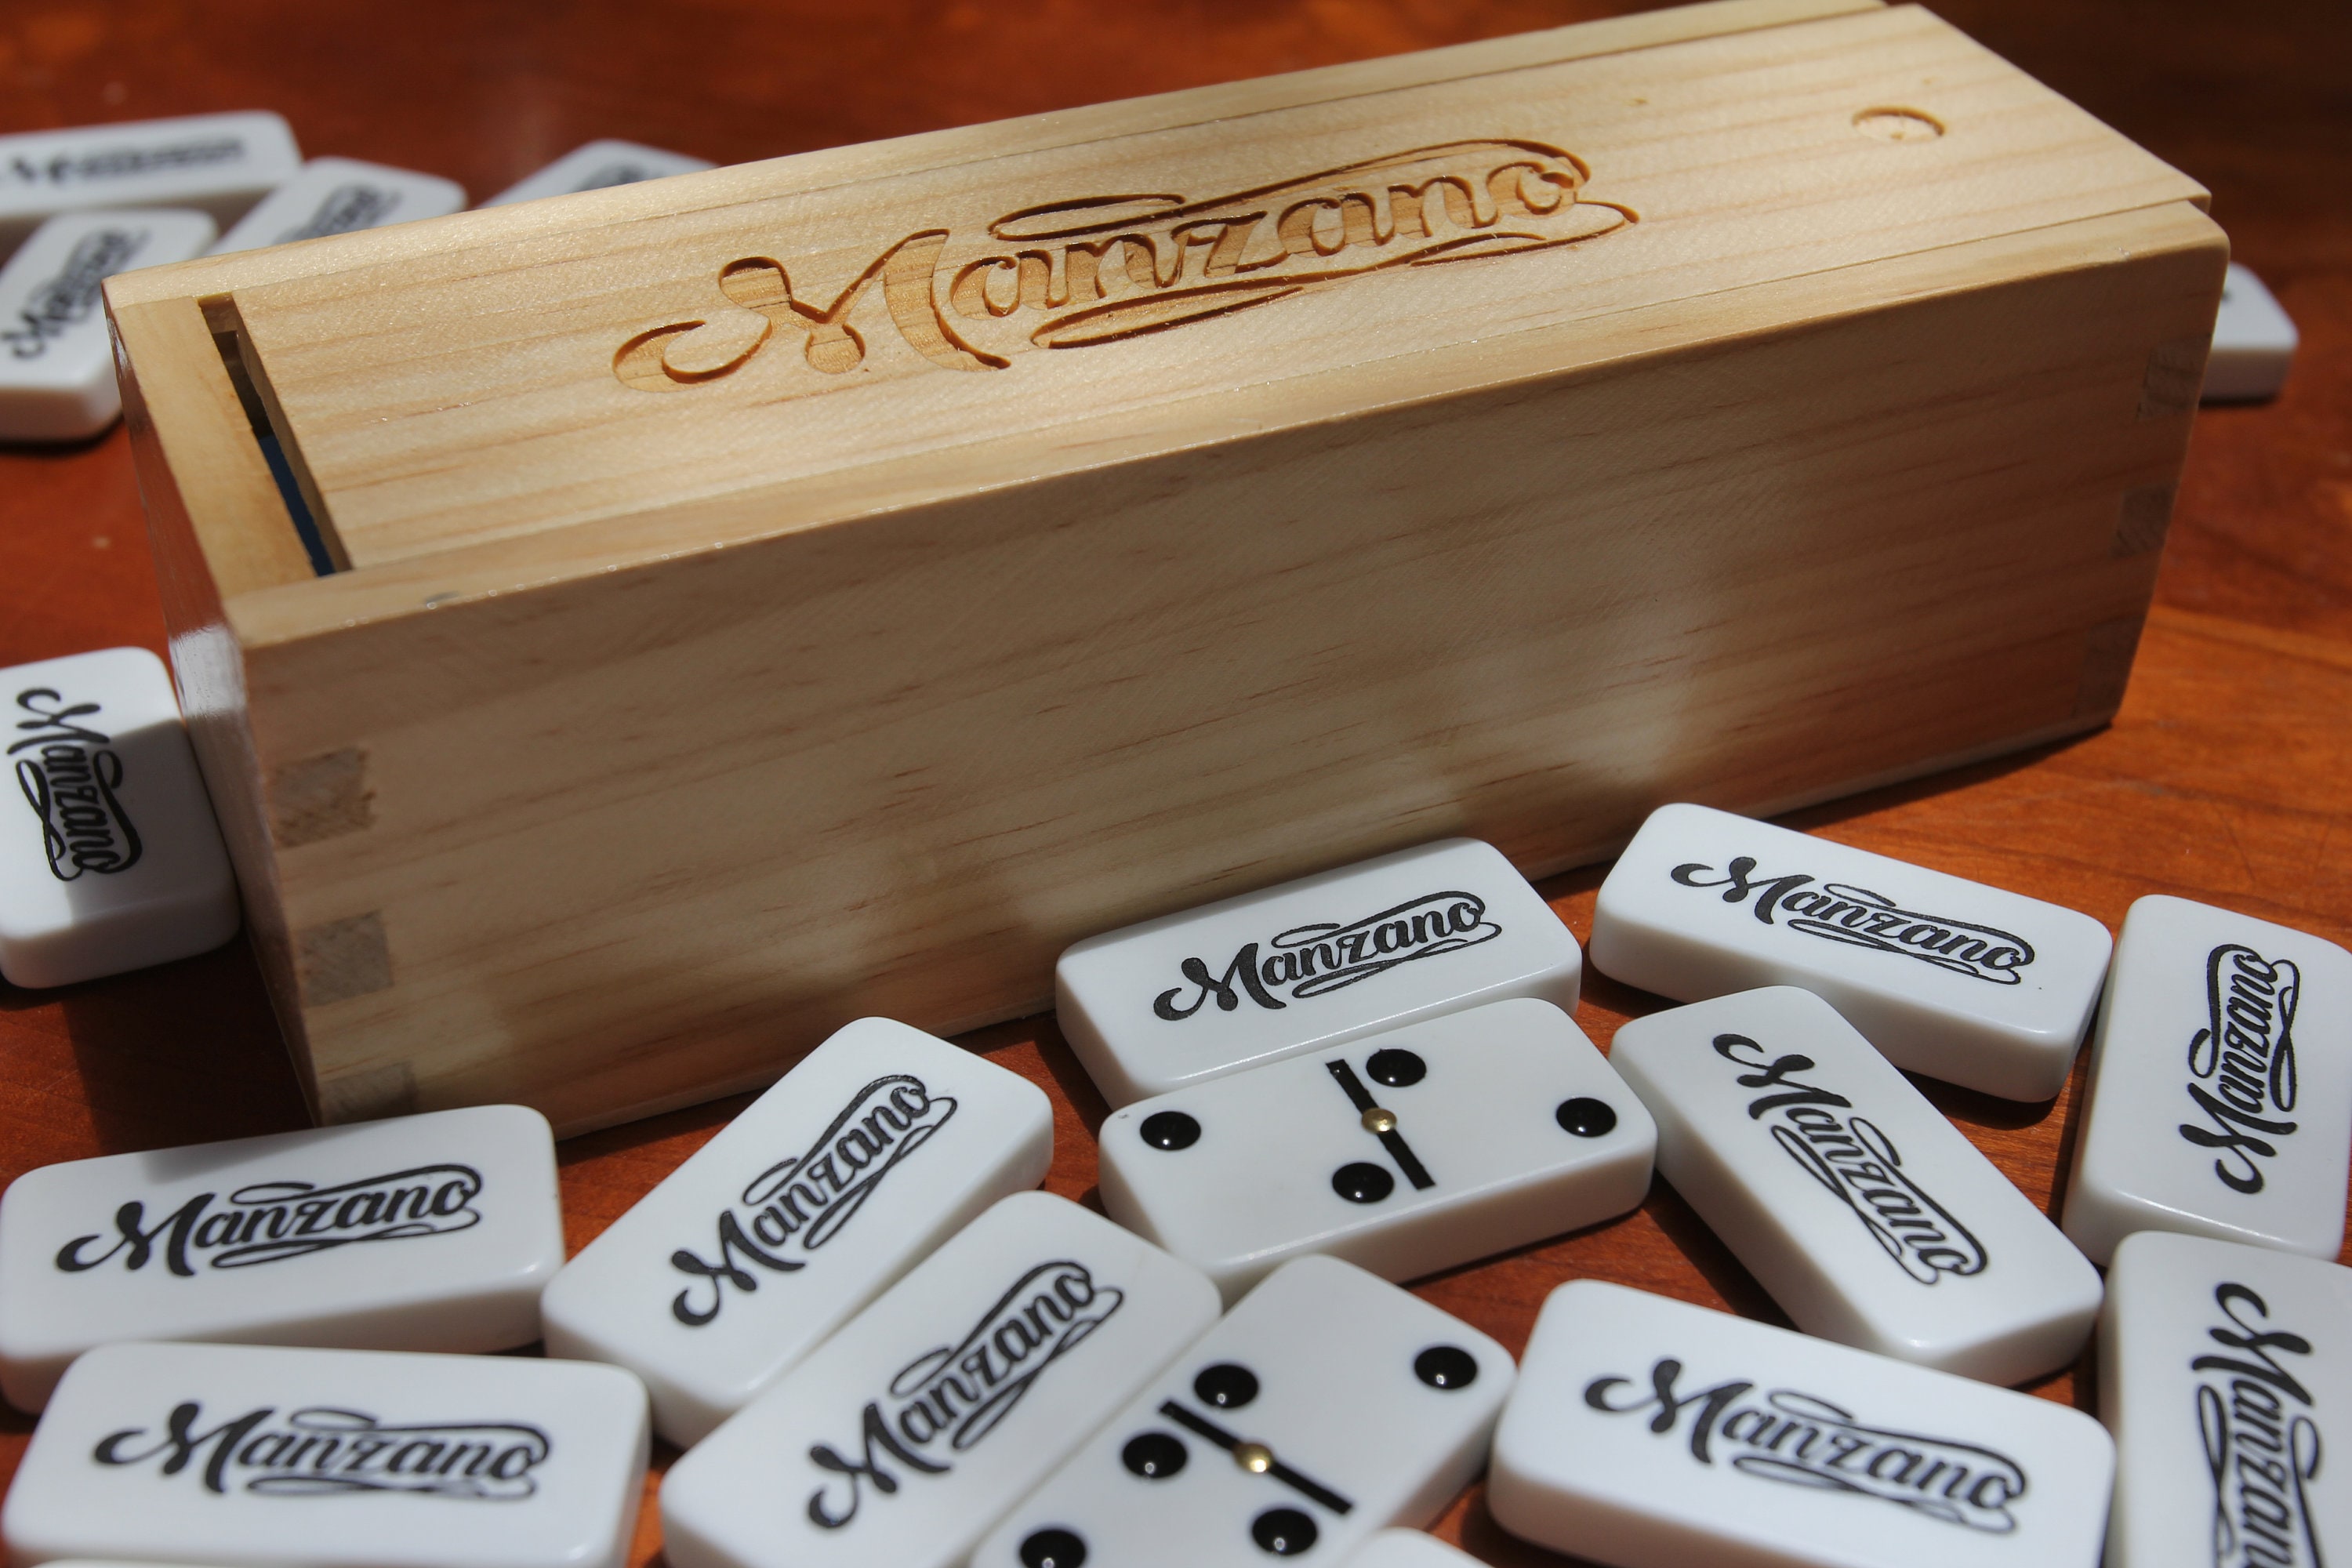 empty domino storage box – Compra empty domino storage box con envío gratis  en AliExpress version